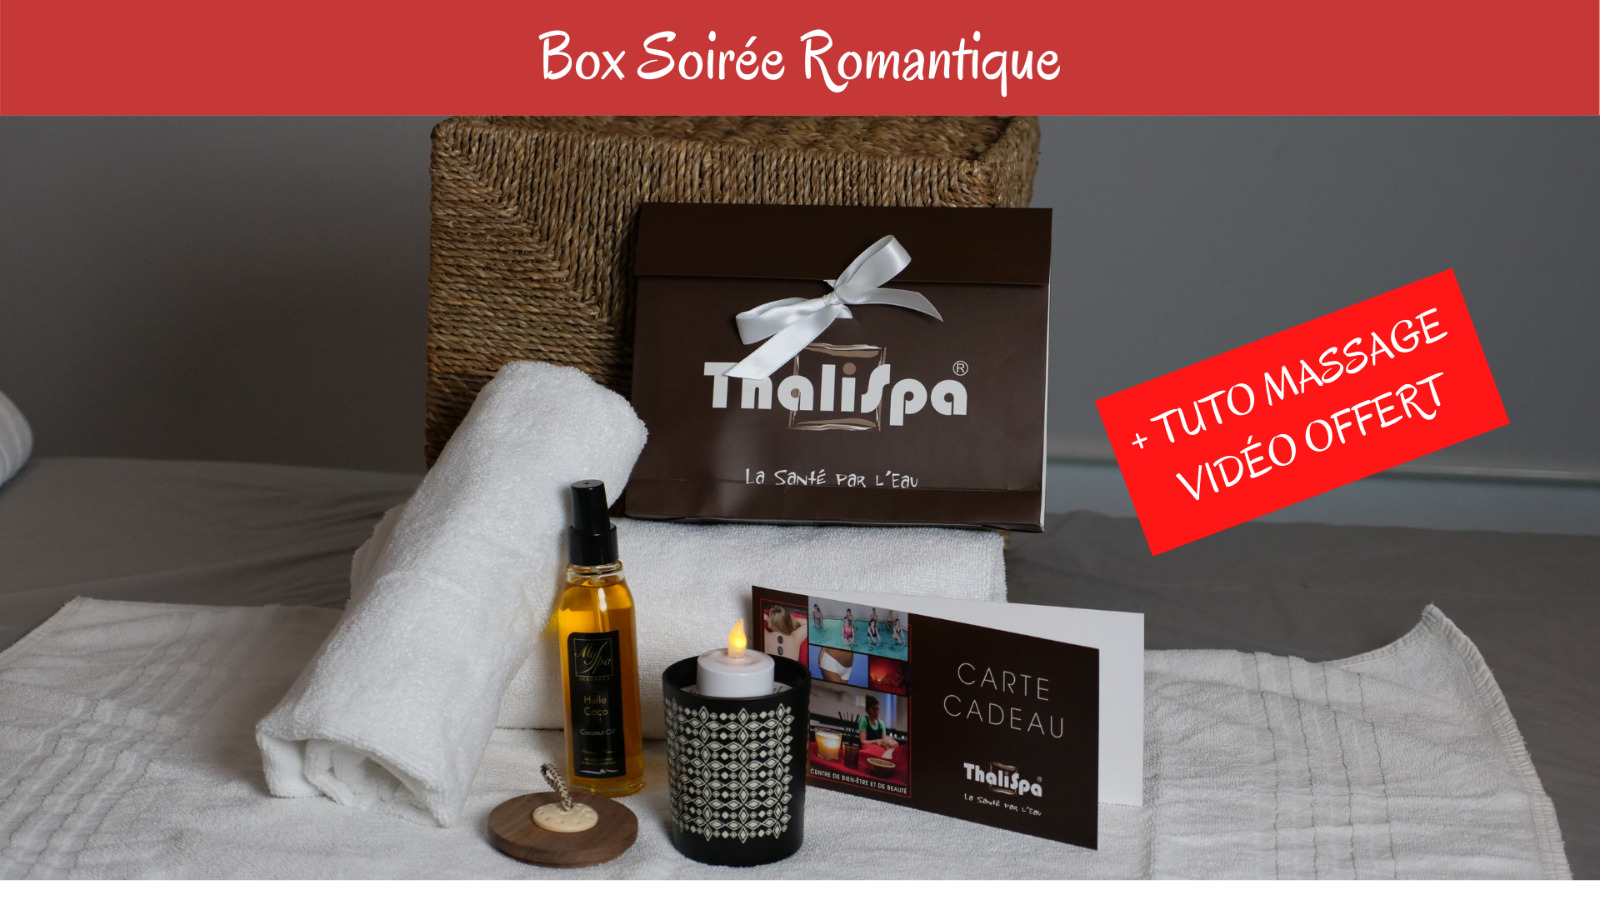 Box Soirée Romantique avec Tuto de massage en vidéo 